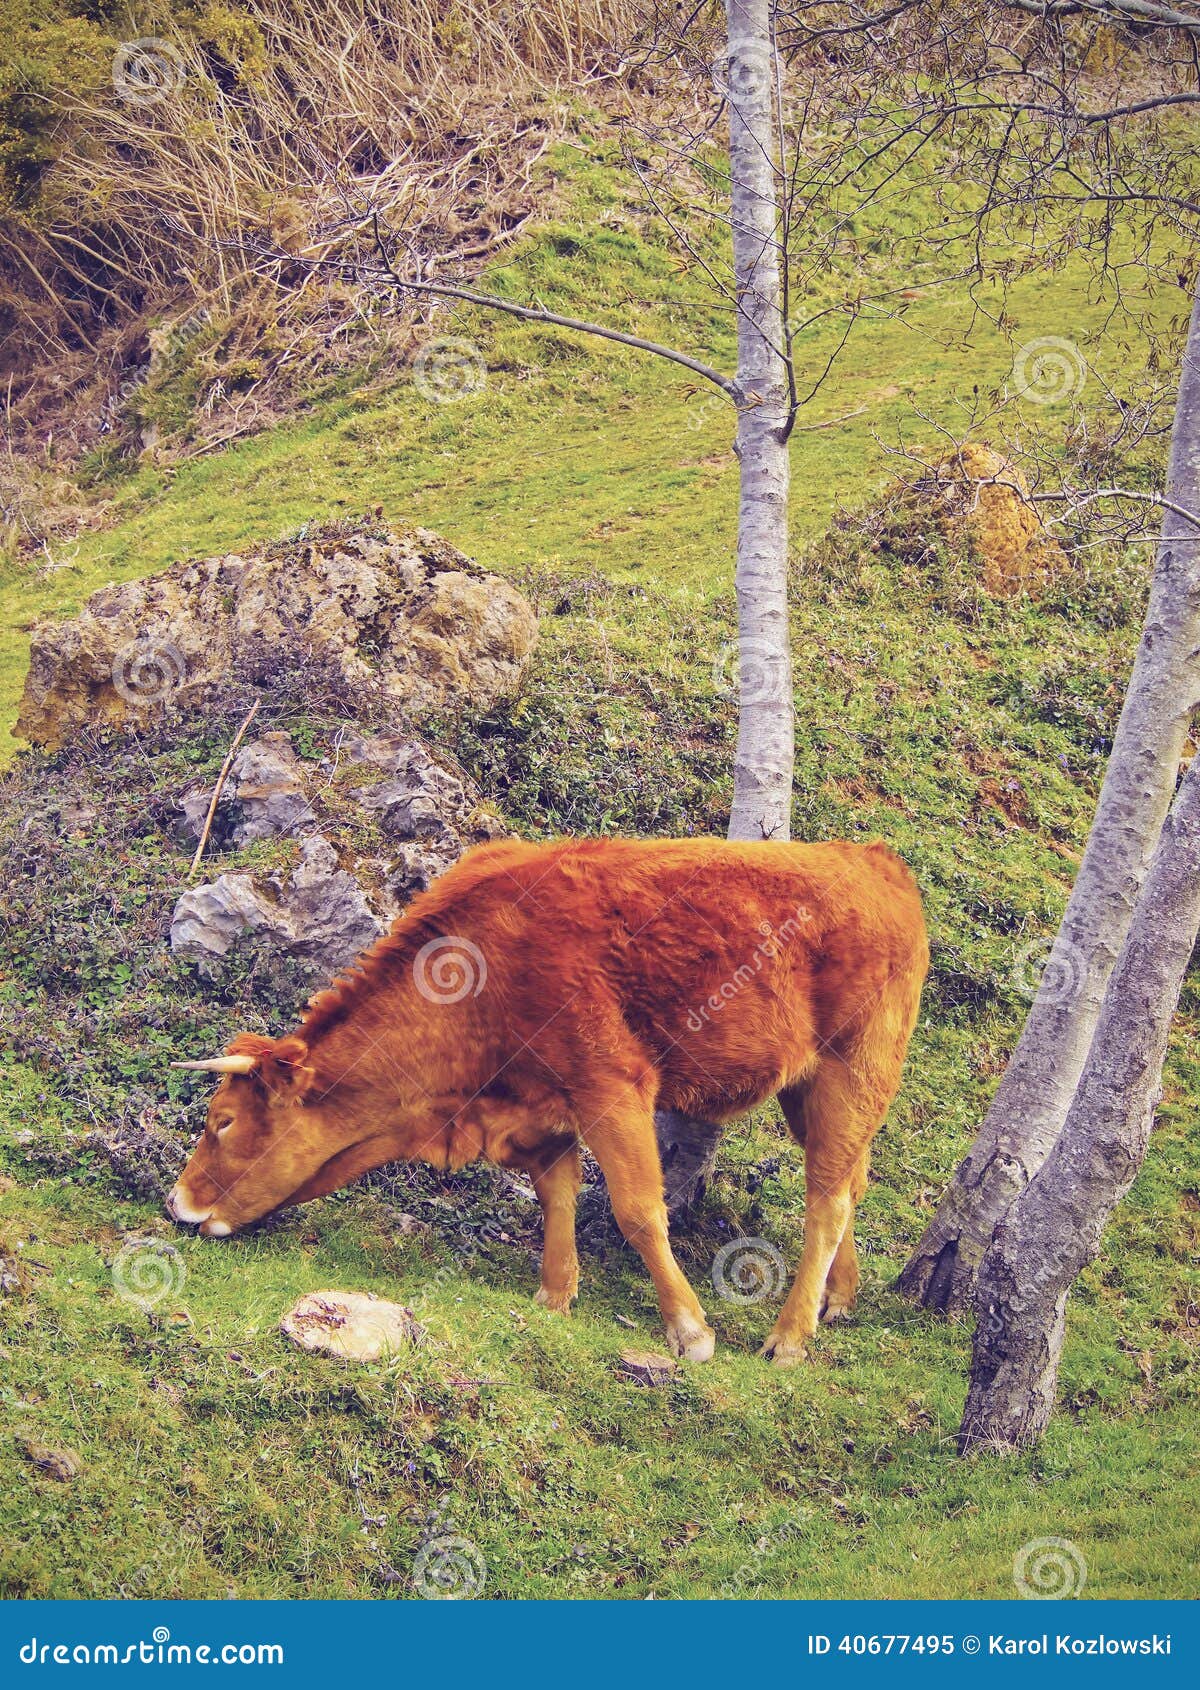 brown cow in la arboleda near bilbao